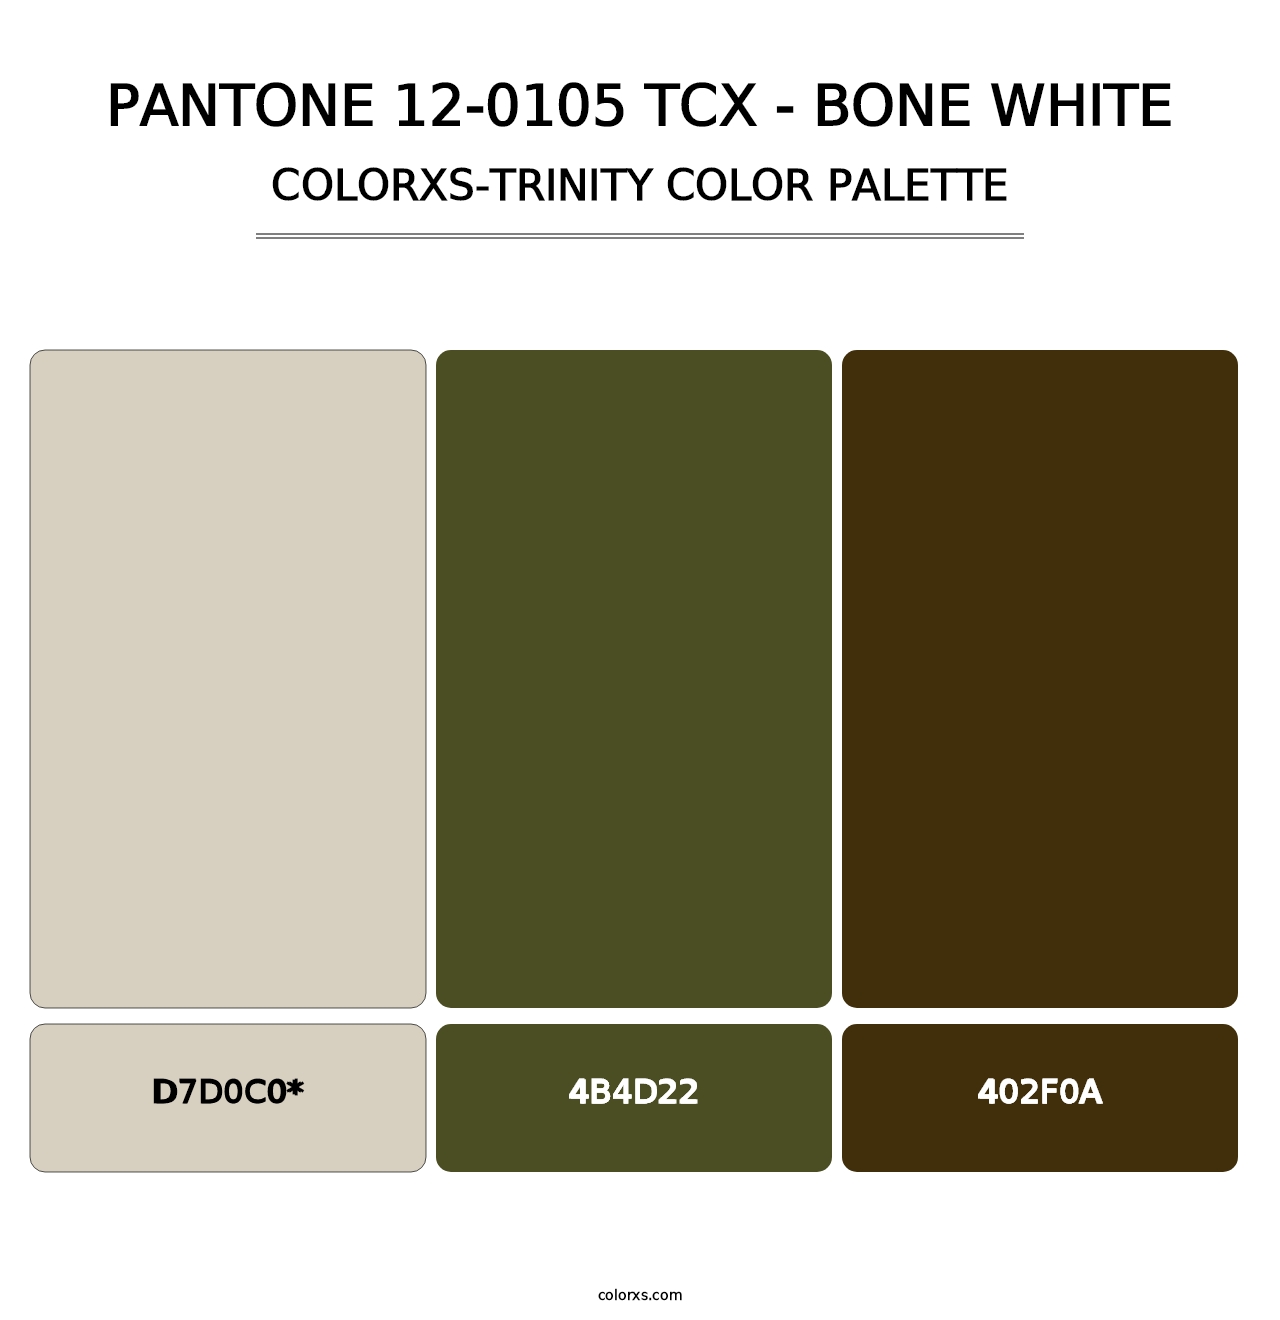 PANTONE 12-0105 TCX - Bone White - Colorxs Trinity Palette